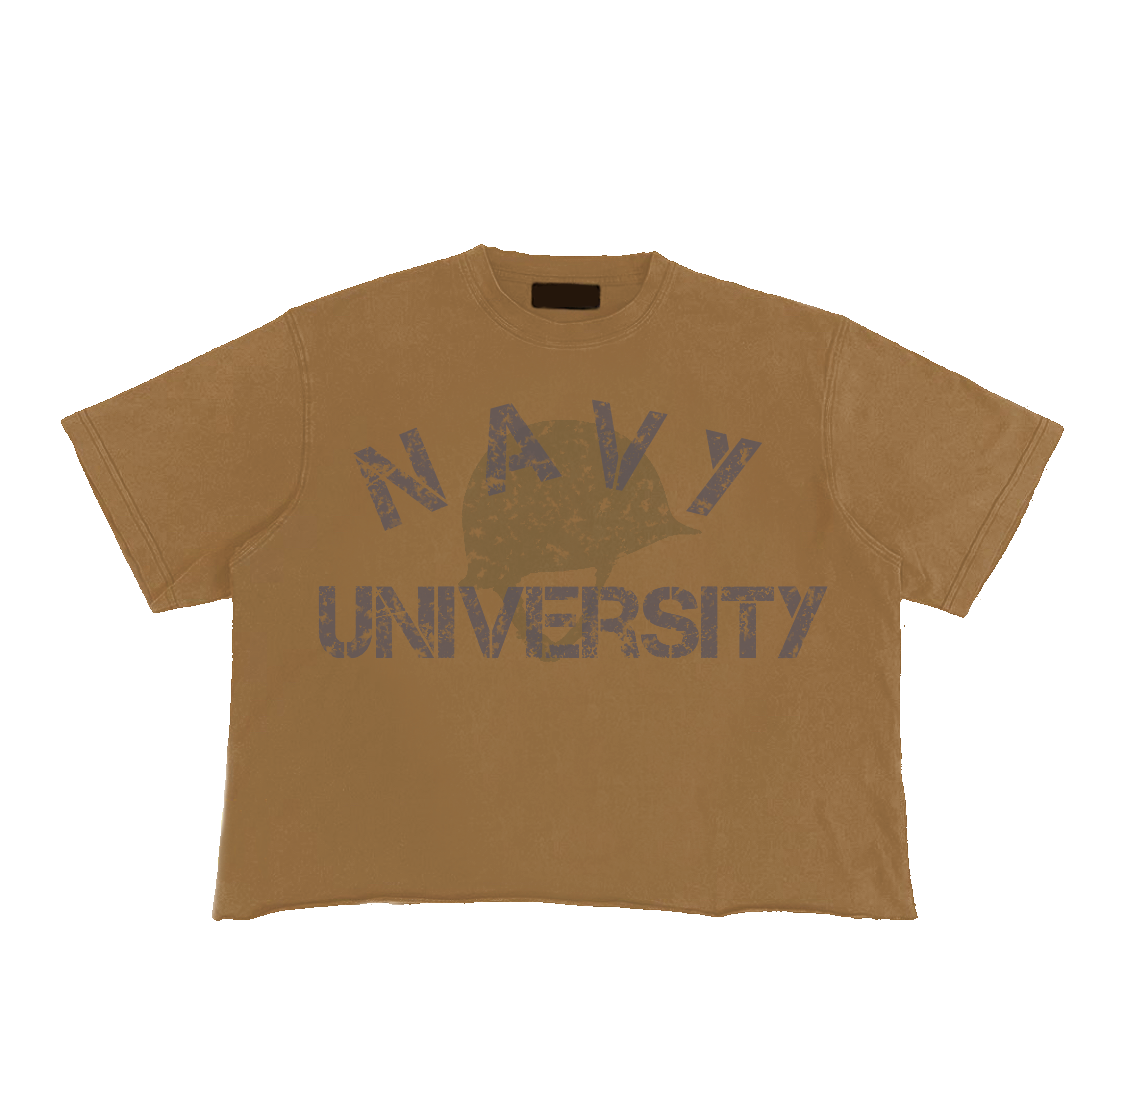 navy university tee